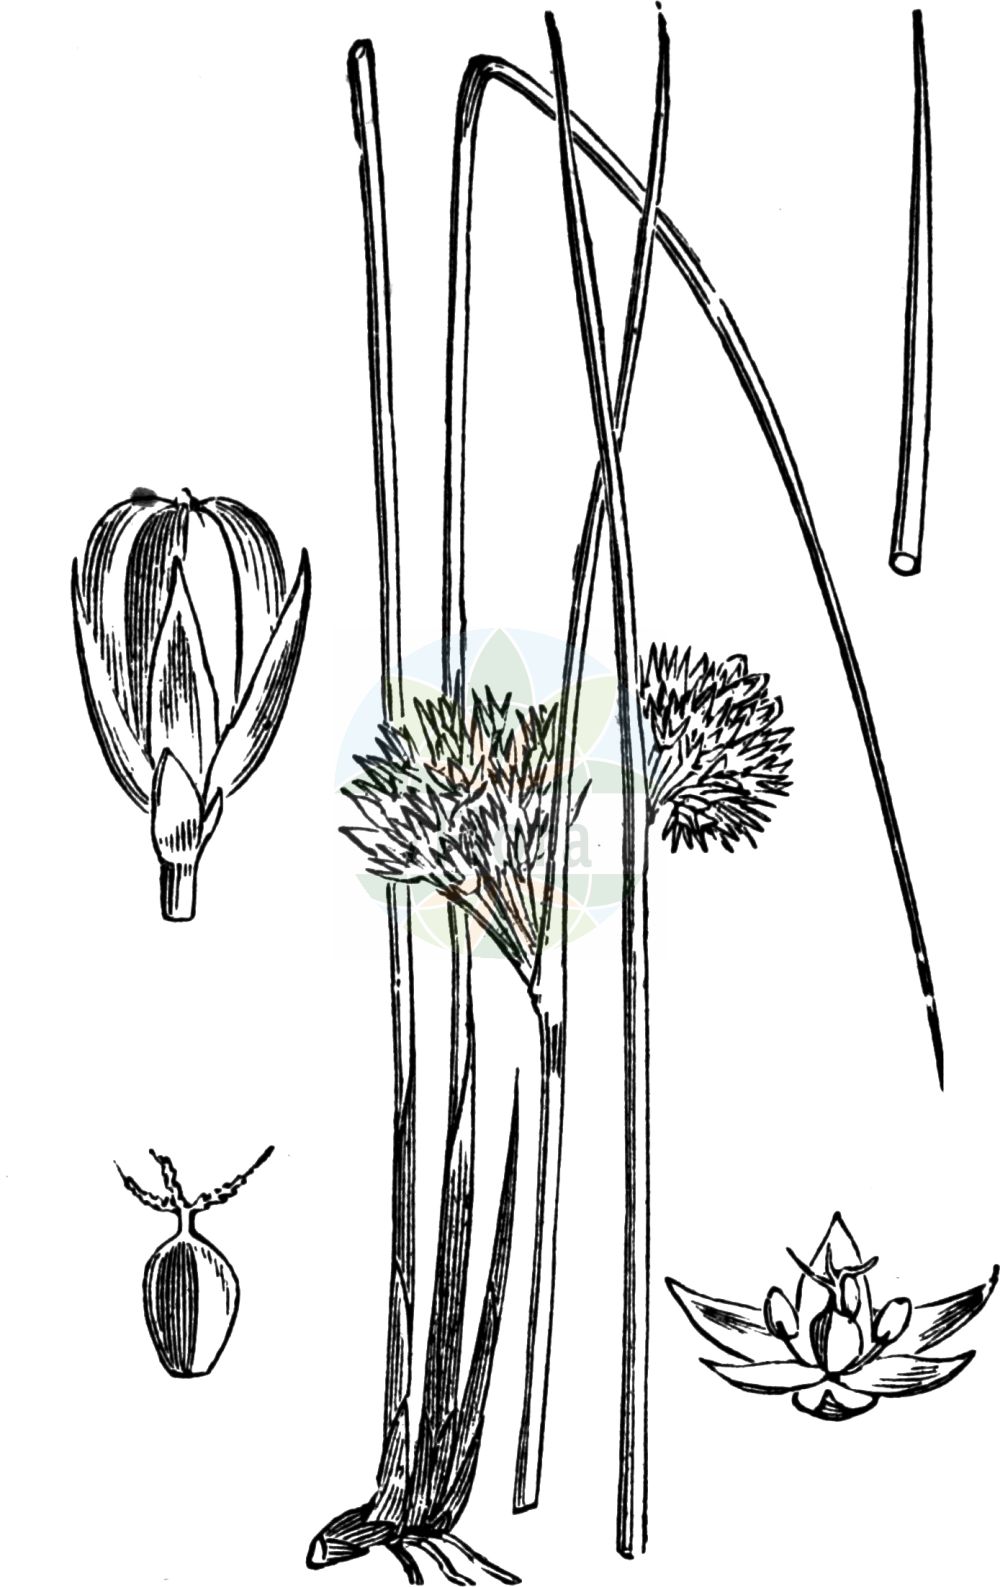 Historische Abbildung von Juncus effusus (Flatter-Binse - Soft-rush). Das Bild zeigt Blatt, Bluete, Frucht und Same. ---- Historical Drawing of Juncus effusus (Flatter-Binse - Soft-rush). The image is showing leaf, flower, fruit and seed.(Juncus effusus,Flatter-Binse,Soft-rush,Juncus communis,Juncus effusus,Juncus laevis,Juncus laevis var. effusus,Flatter-Binse,Soft-rush,Candle Rush,Common Rush,Pin Rush,Juncus,Binse,Rush,Juncaceae,Binsengewächse,Rush family,Blatt,Bluete,Frucht,Same,leaf,flower,fruit,seed,Fitch et al. (1880))